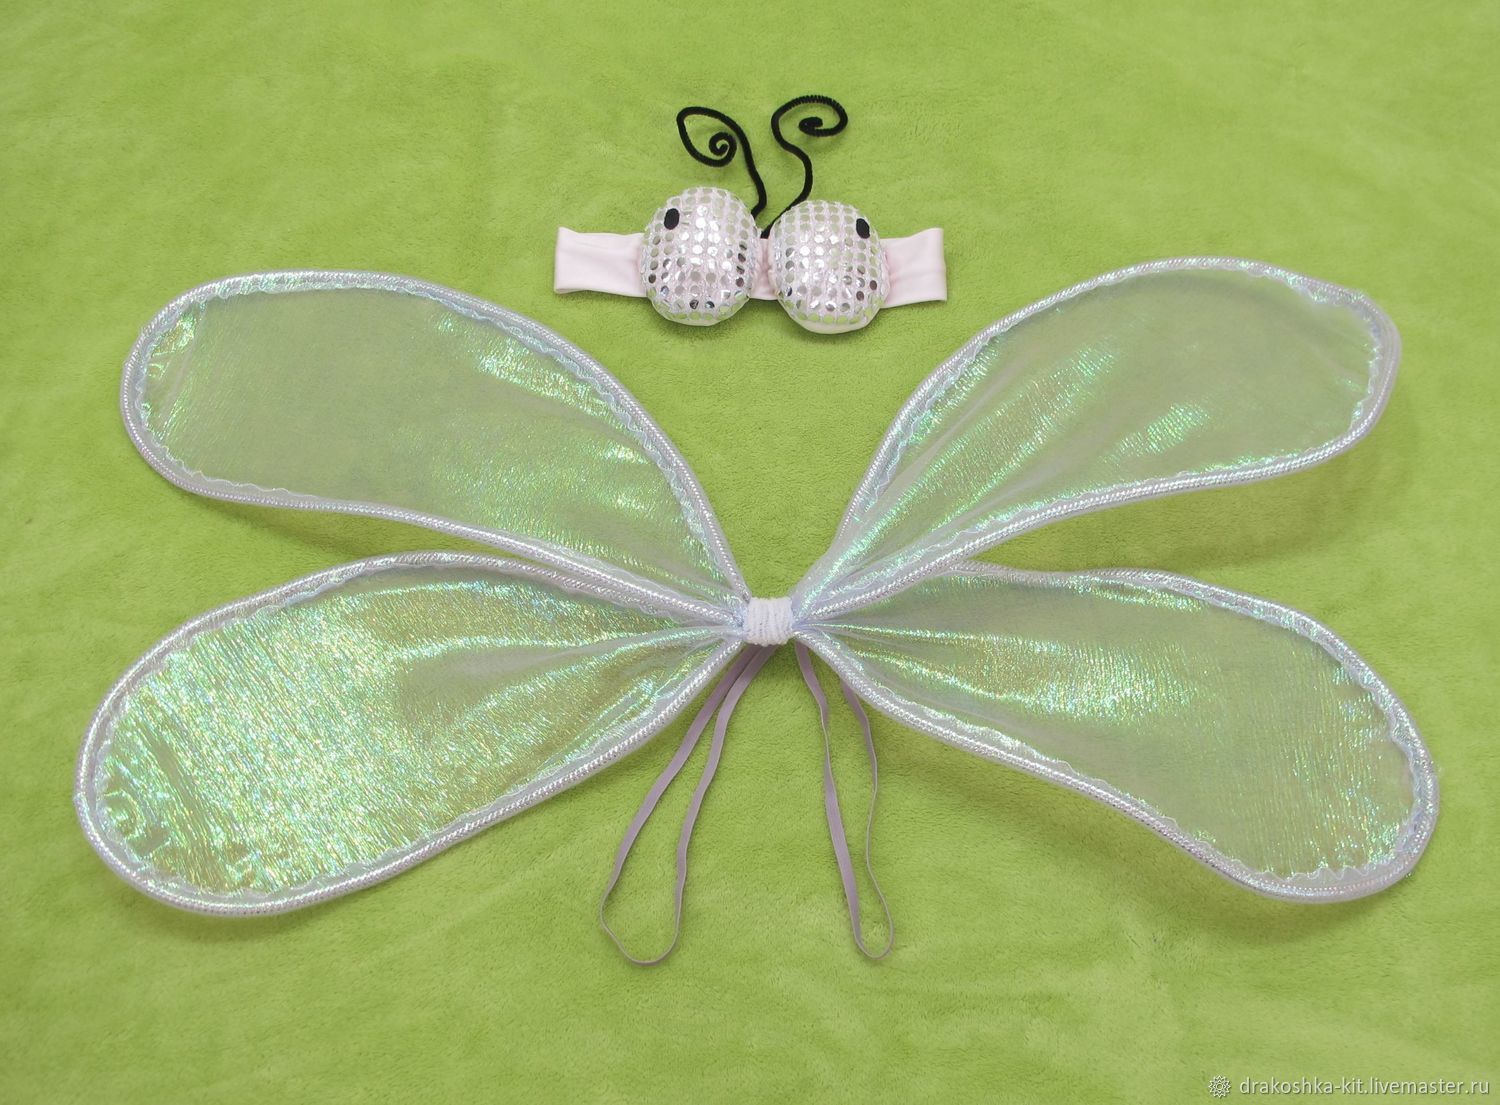 Костюм бабочки своими руками. Как сделать костюм бабочки - инструкция на aikimaster.ru